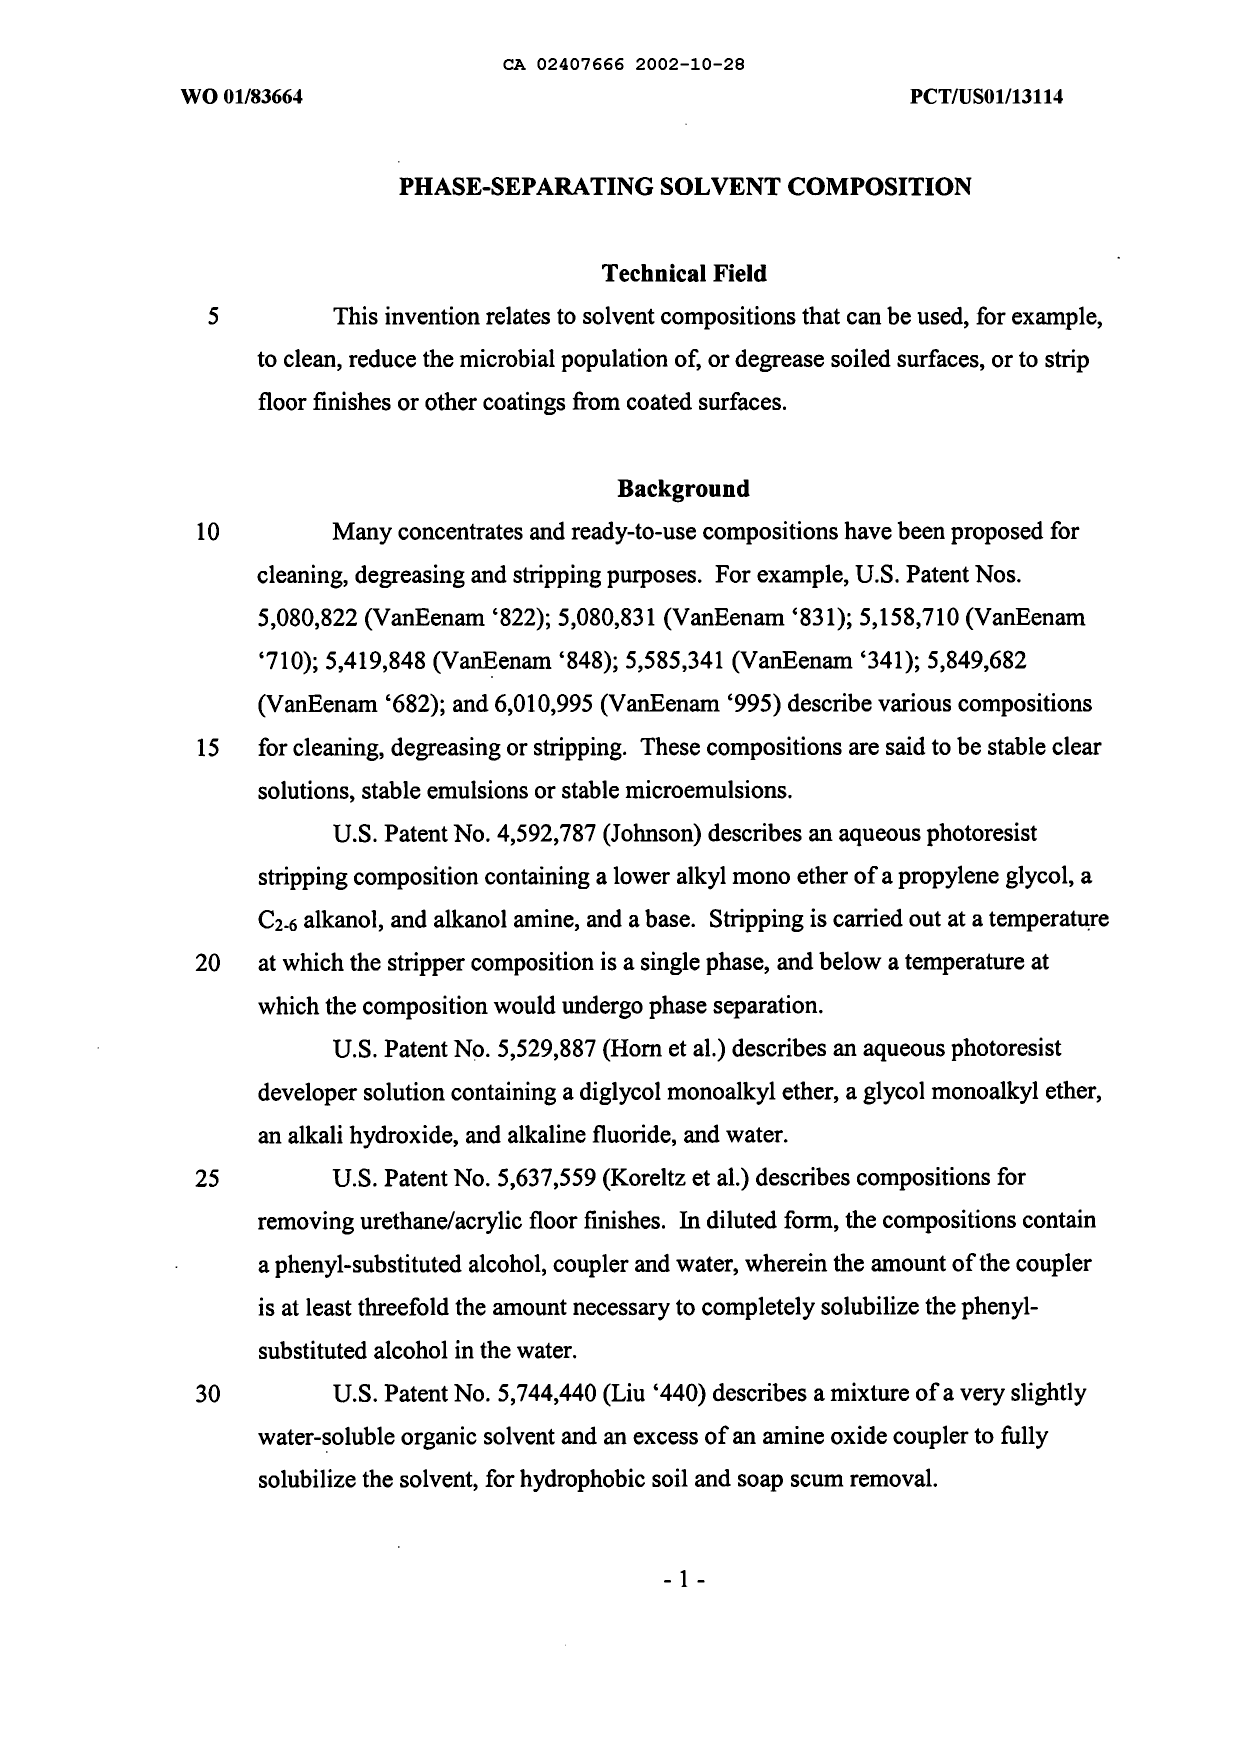 Canadian Patent Document 2407666. Description 20021028. Image 1 of 19